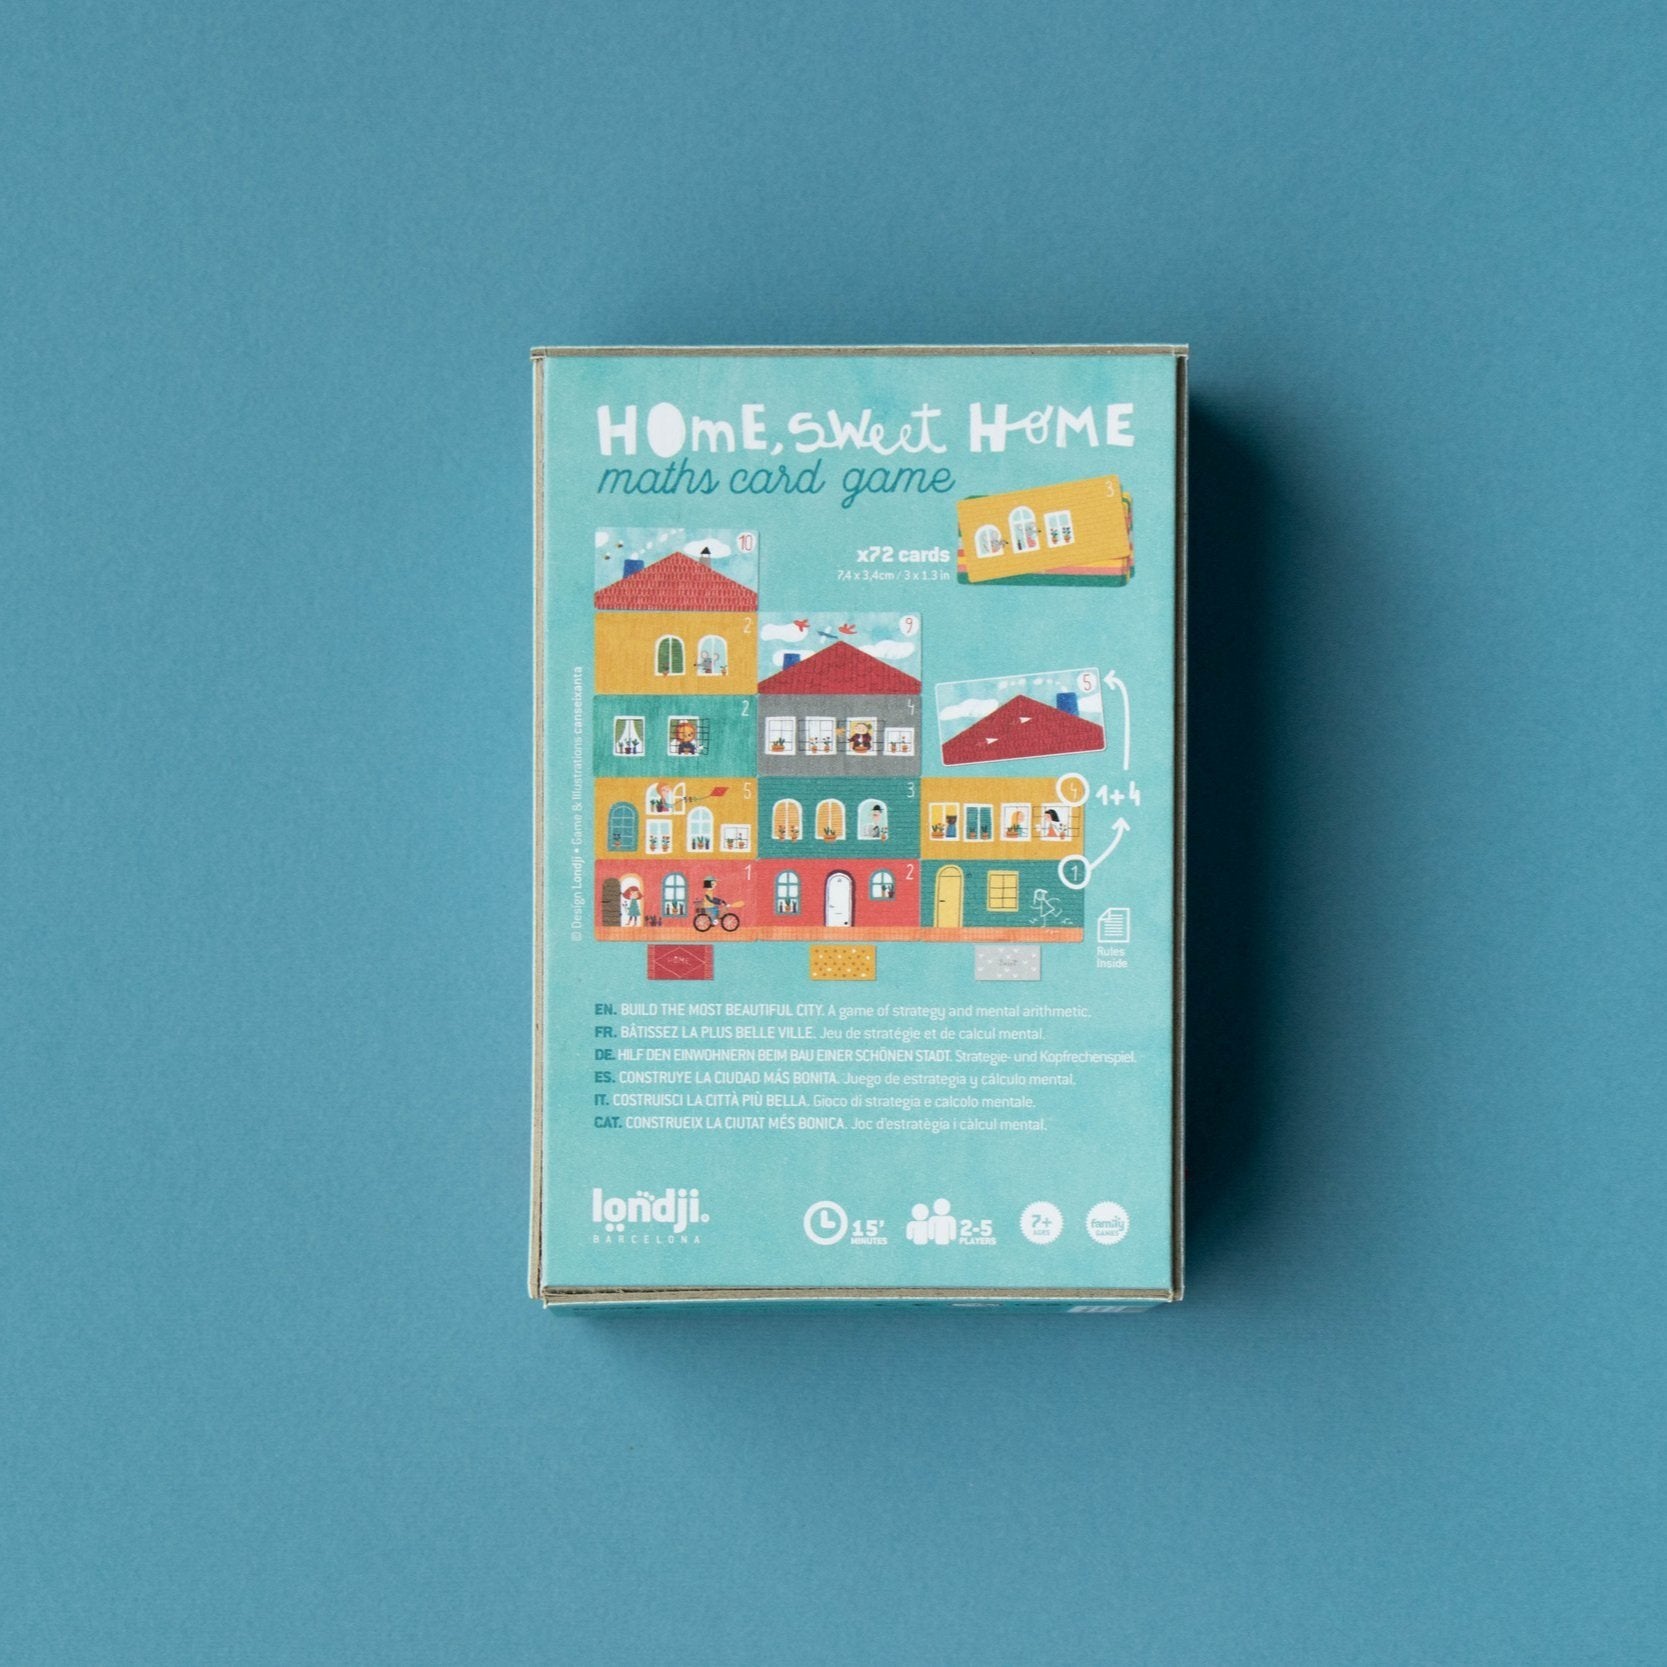 [PRE-ORDER] Londji Home Sweet Home Maths Card Game